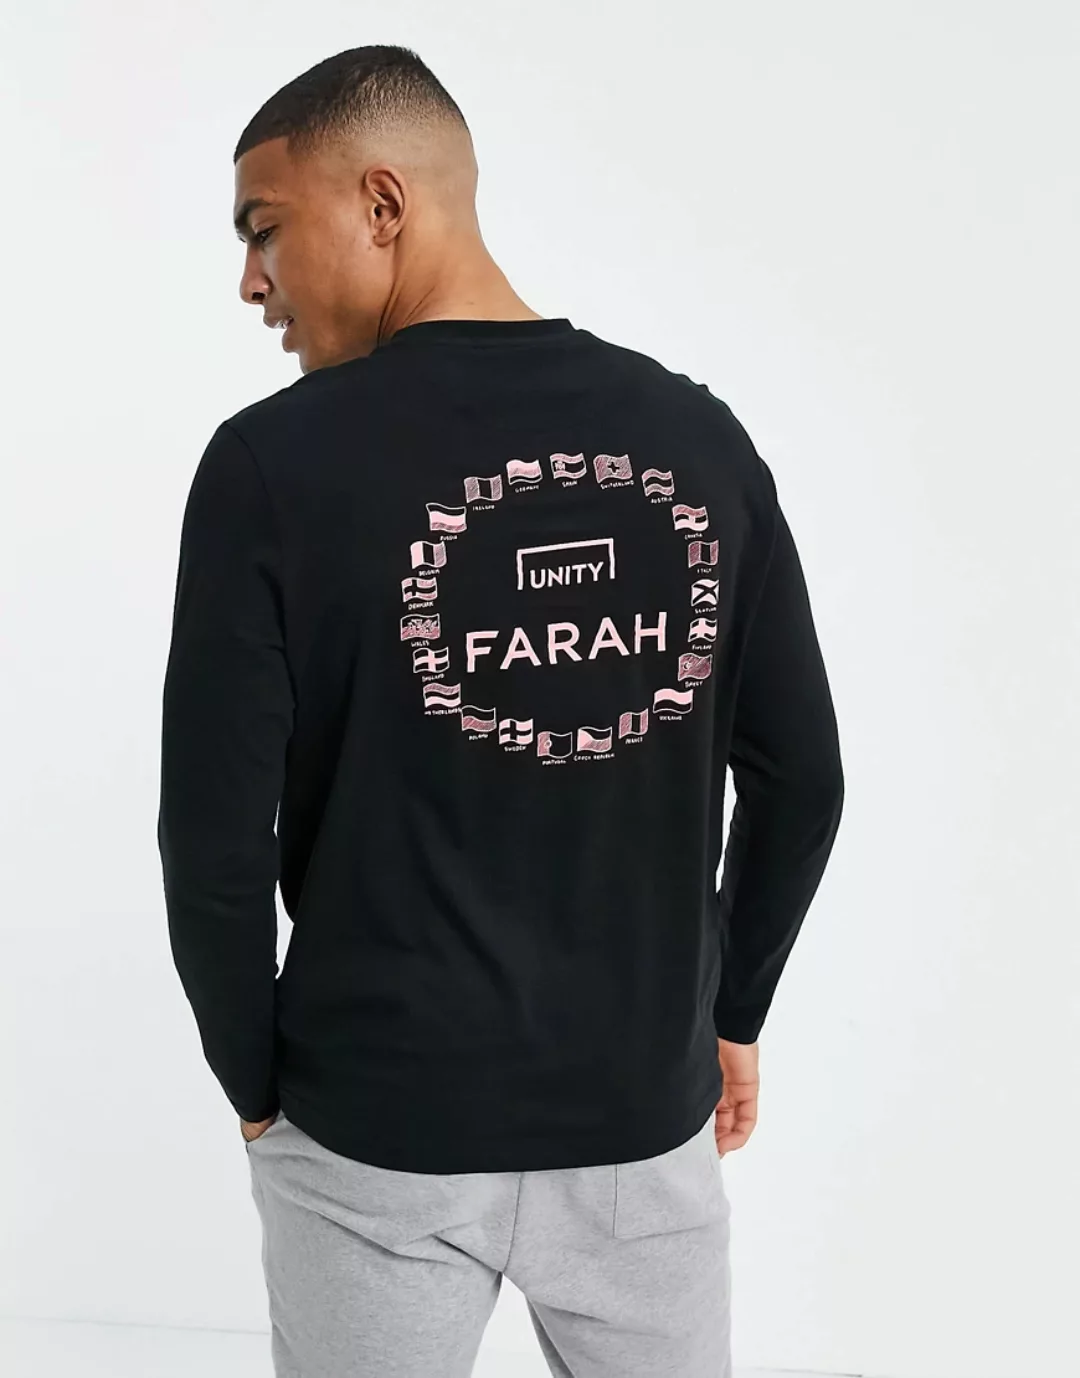 Farah X SoccerBible – Europa – Langärmliges Shirt in Schwarz-Marineblau günstig online kaufen